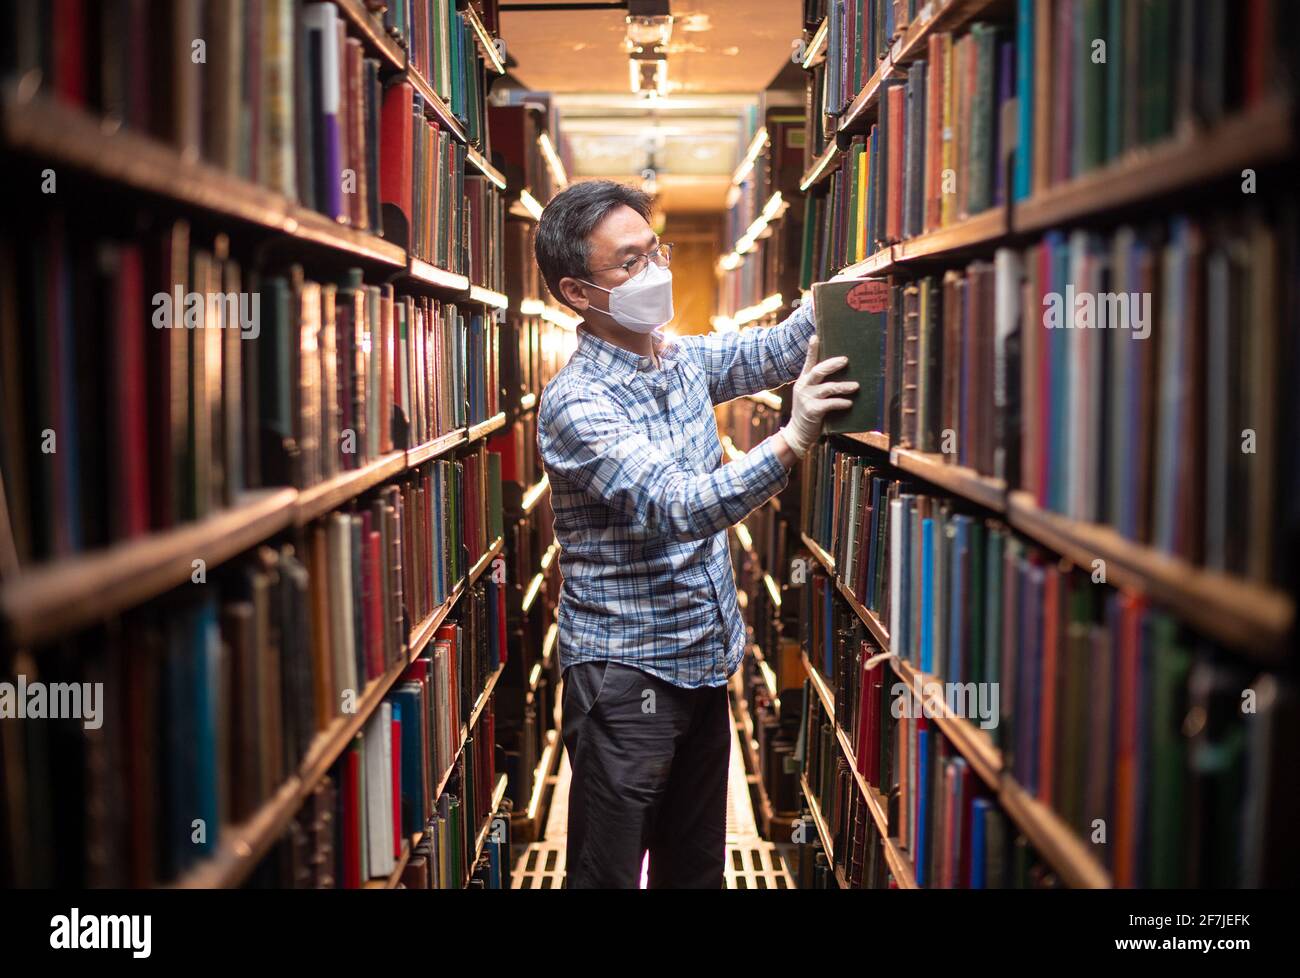 Chung Hoon organise des livres dans les piles de livres à l'arrière de la London Library, à St James Square, Londres, en prévision de sa réouverture prévue aux membres le 12 avril, alors que le gouvernement atténue les restrictions actuelles concernant les coronavirus. Date de la photo: Mercredi 7 avril 2021. La London Library a été créée en 1841 et sa collection compte plus de 1,000,000 titres, couvrant plus de 2,000 sujets dans 55 langues différentes. Les livres vont de 1500 à 2015, complétés par des copies reliées de plus de 2,000 périodiques datant de 1699 à aujourd'hui. Banque D'Images